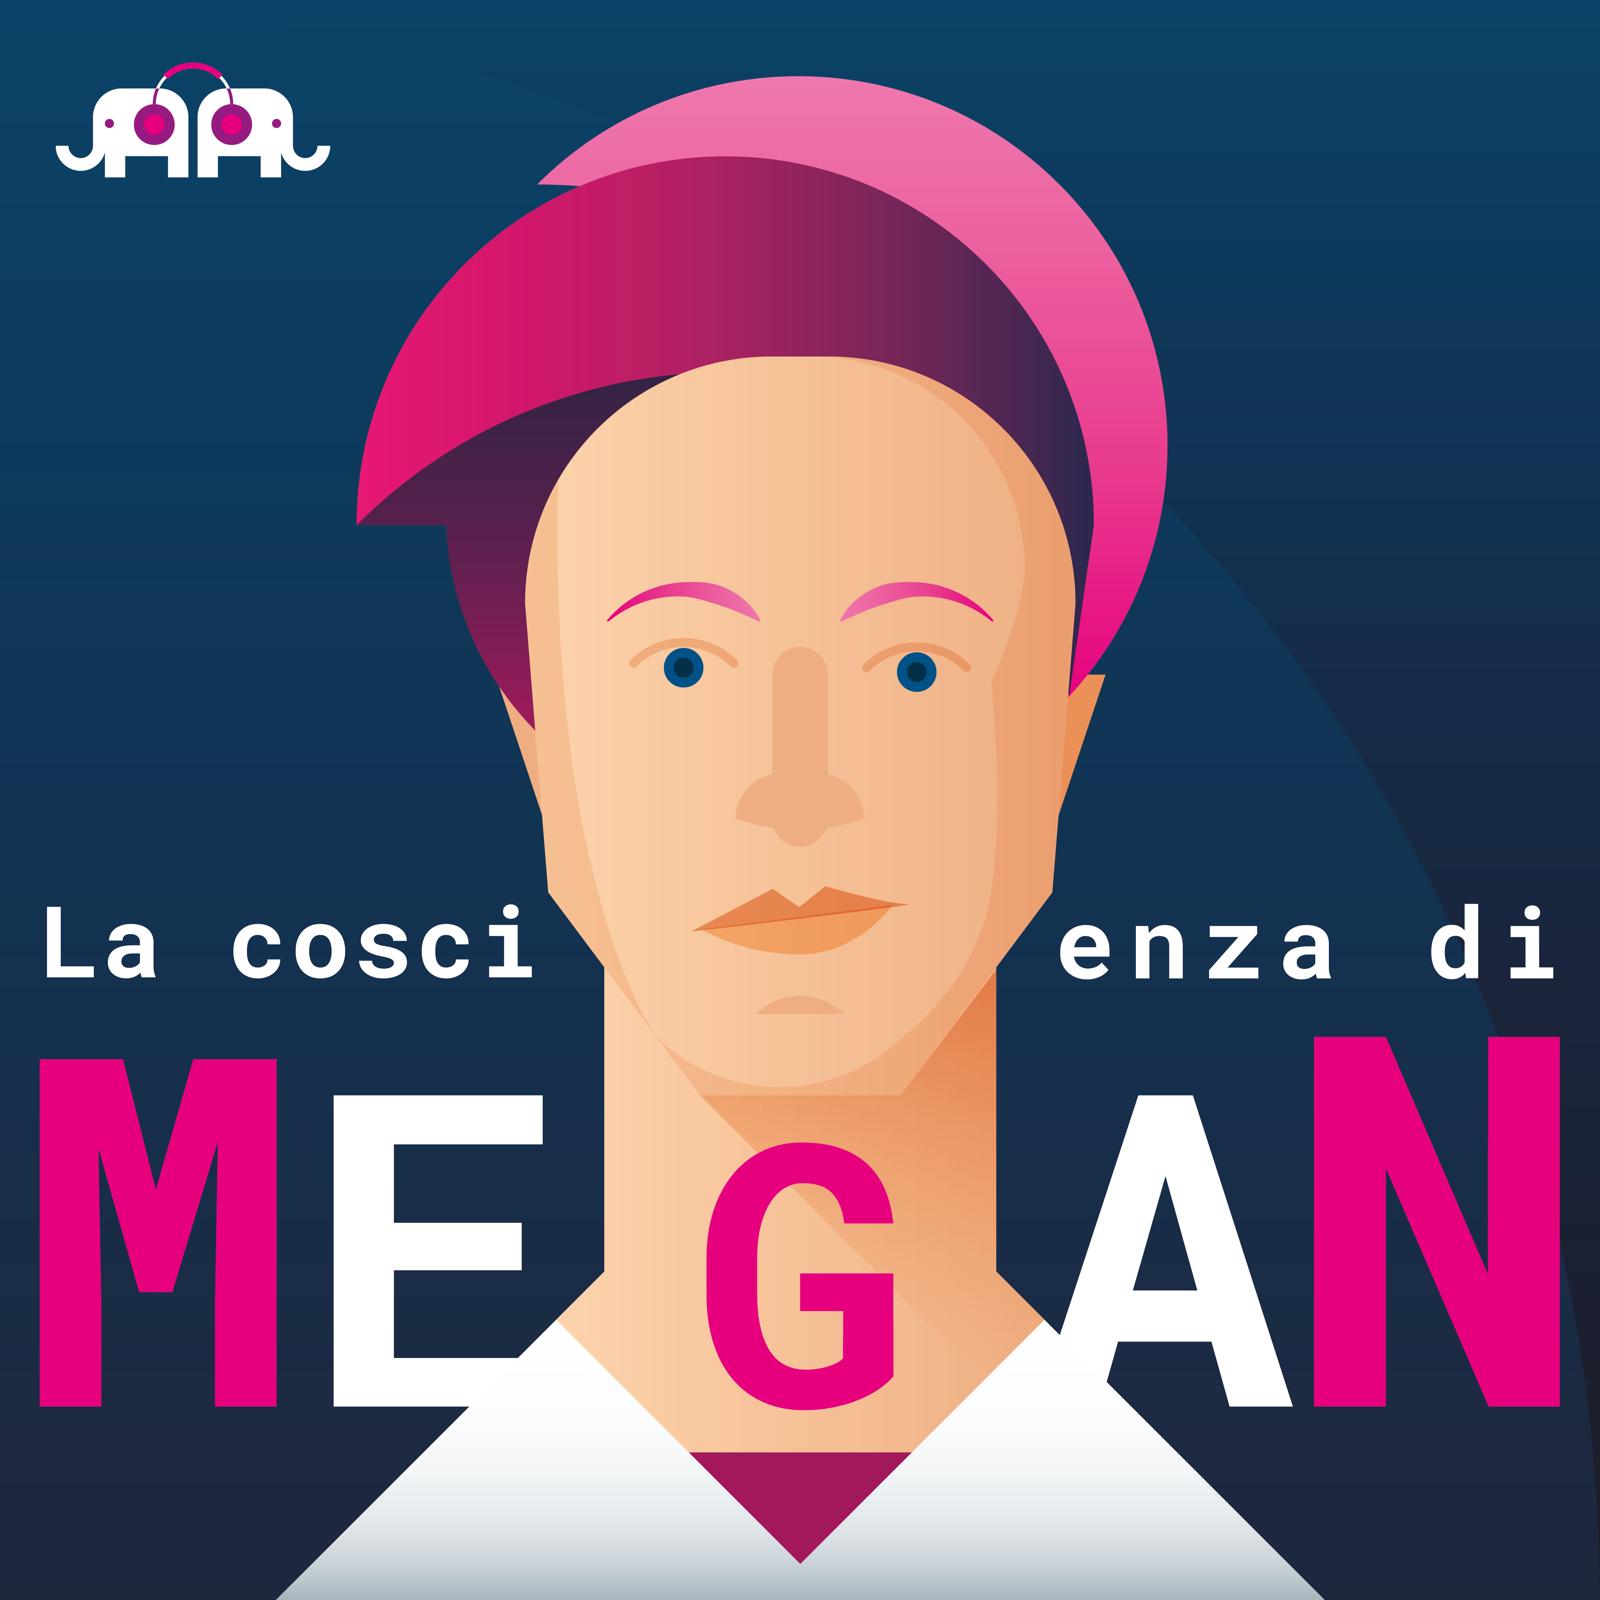 VIDEO - La coscienza di Megan